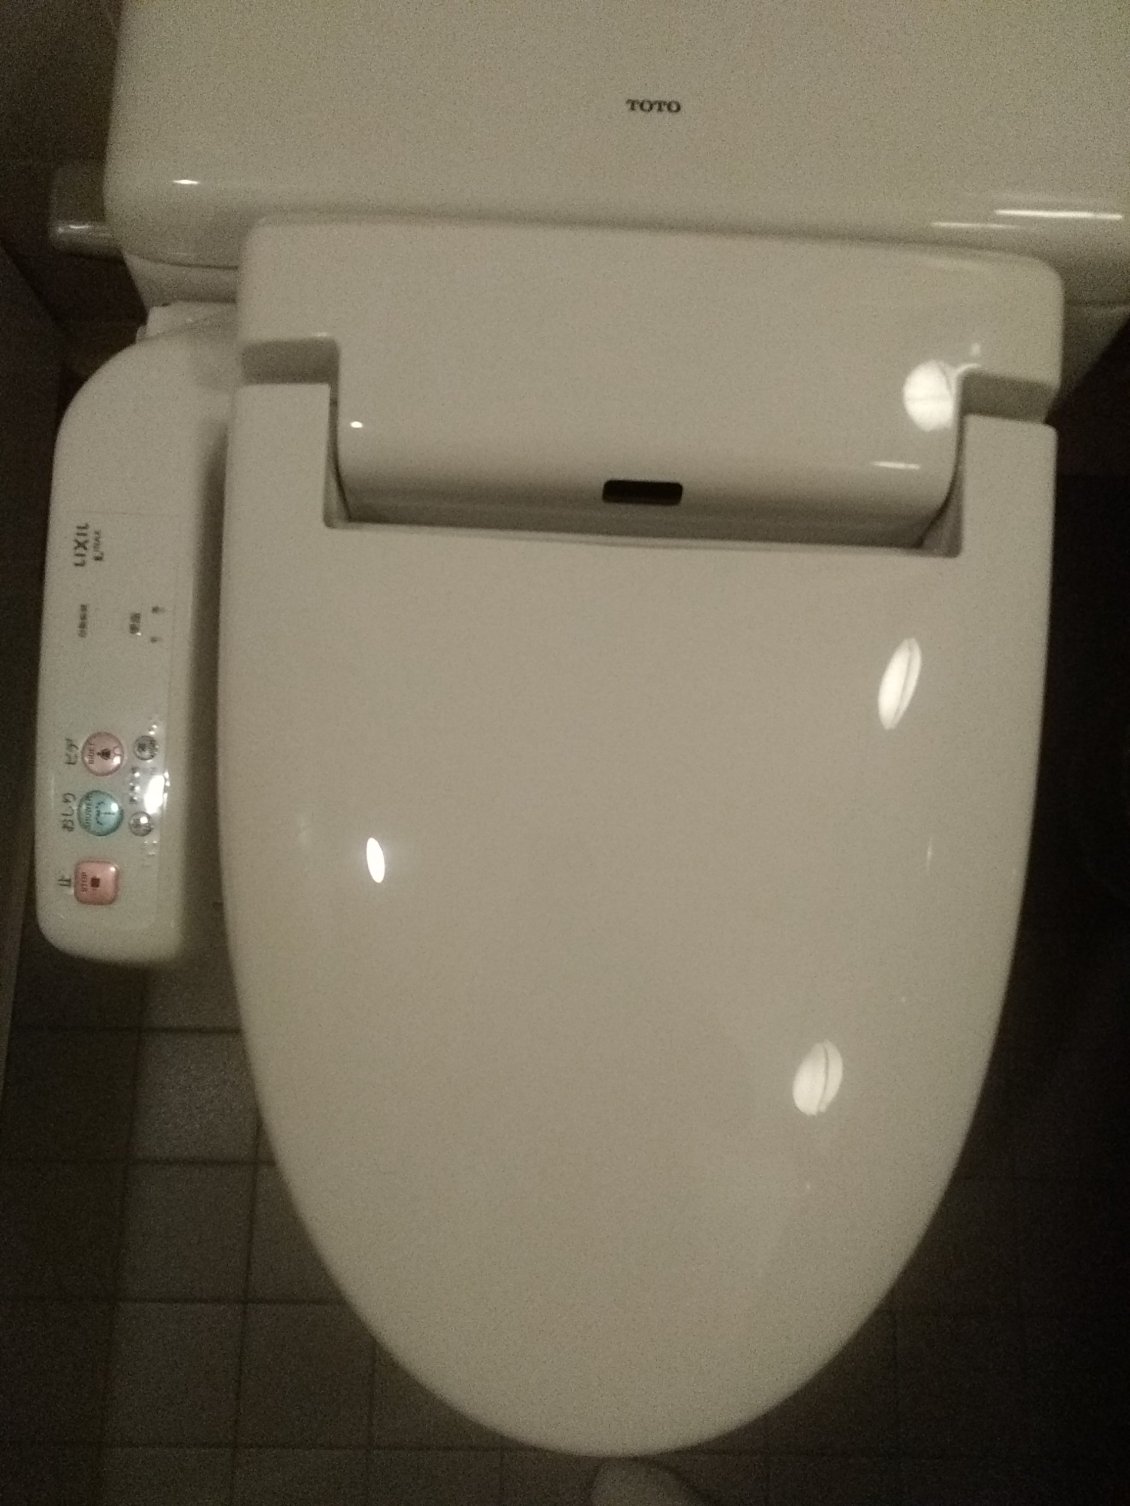 Fallais bien que je vous montre la technologie des toilettes japonaises.